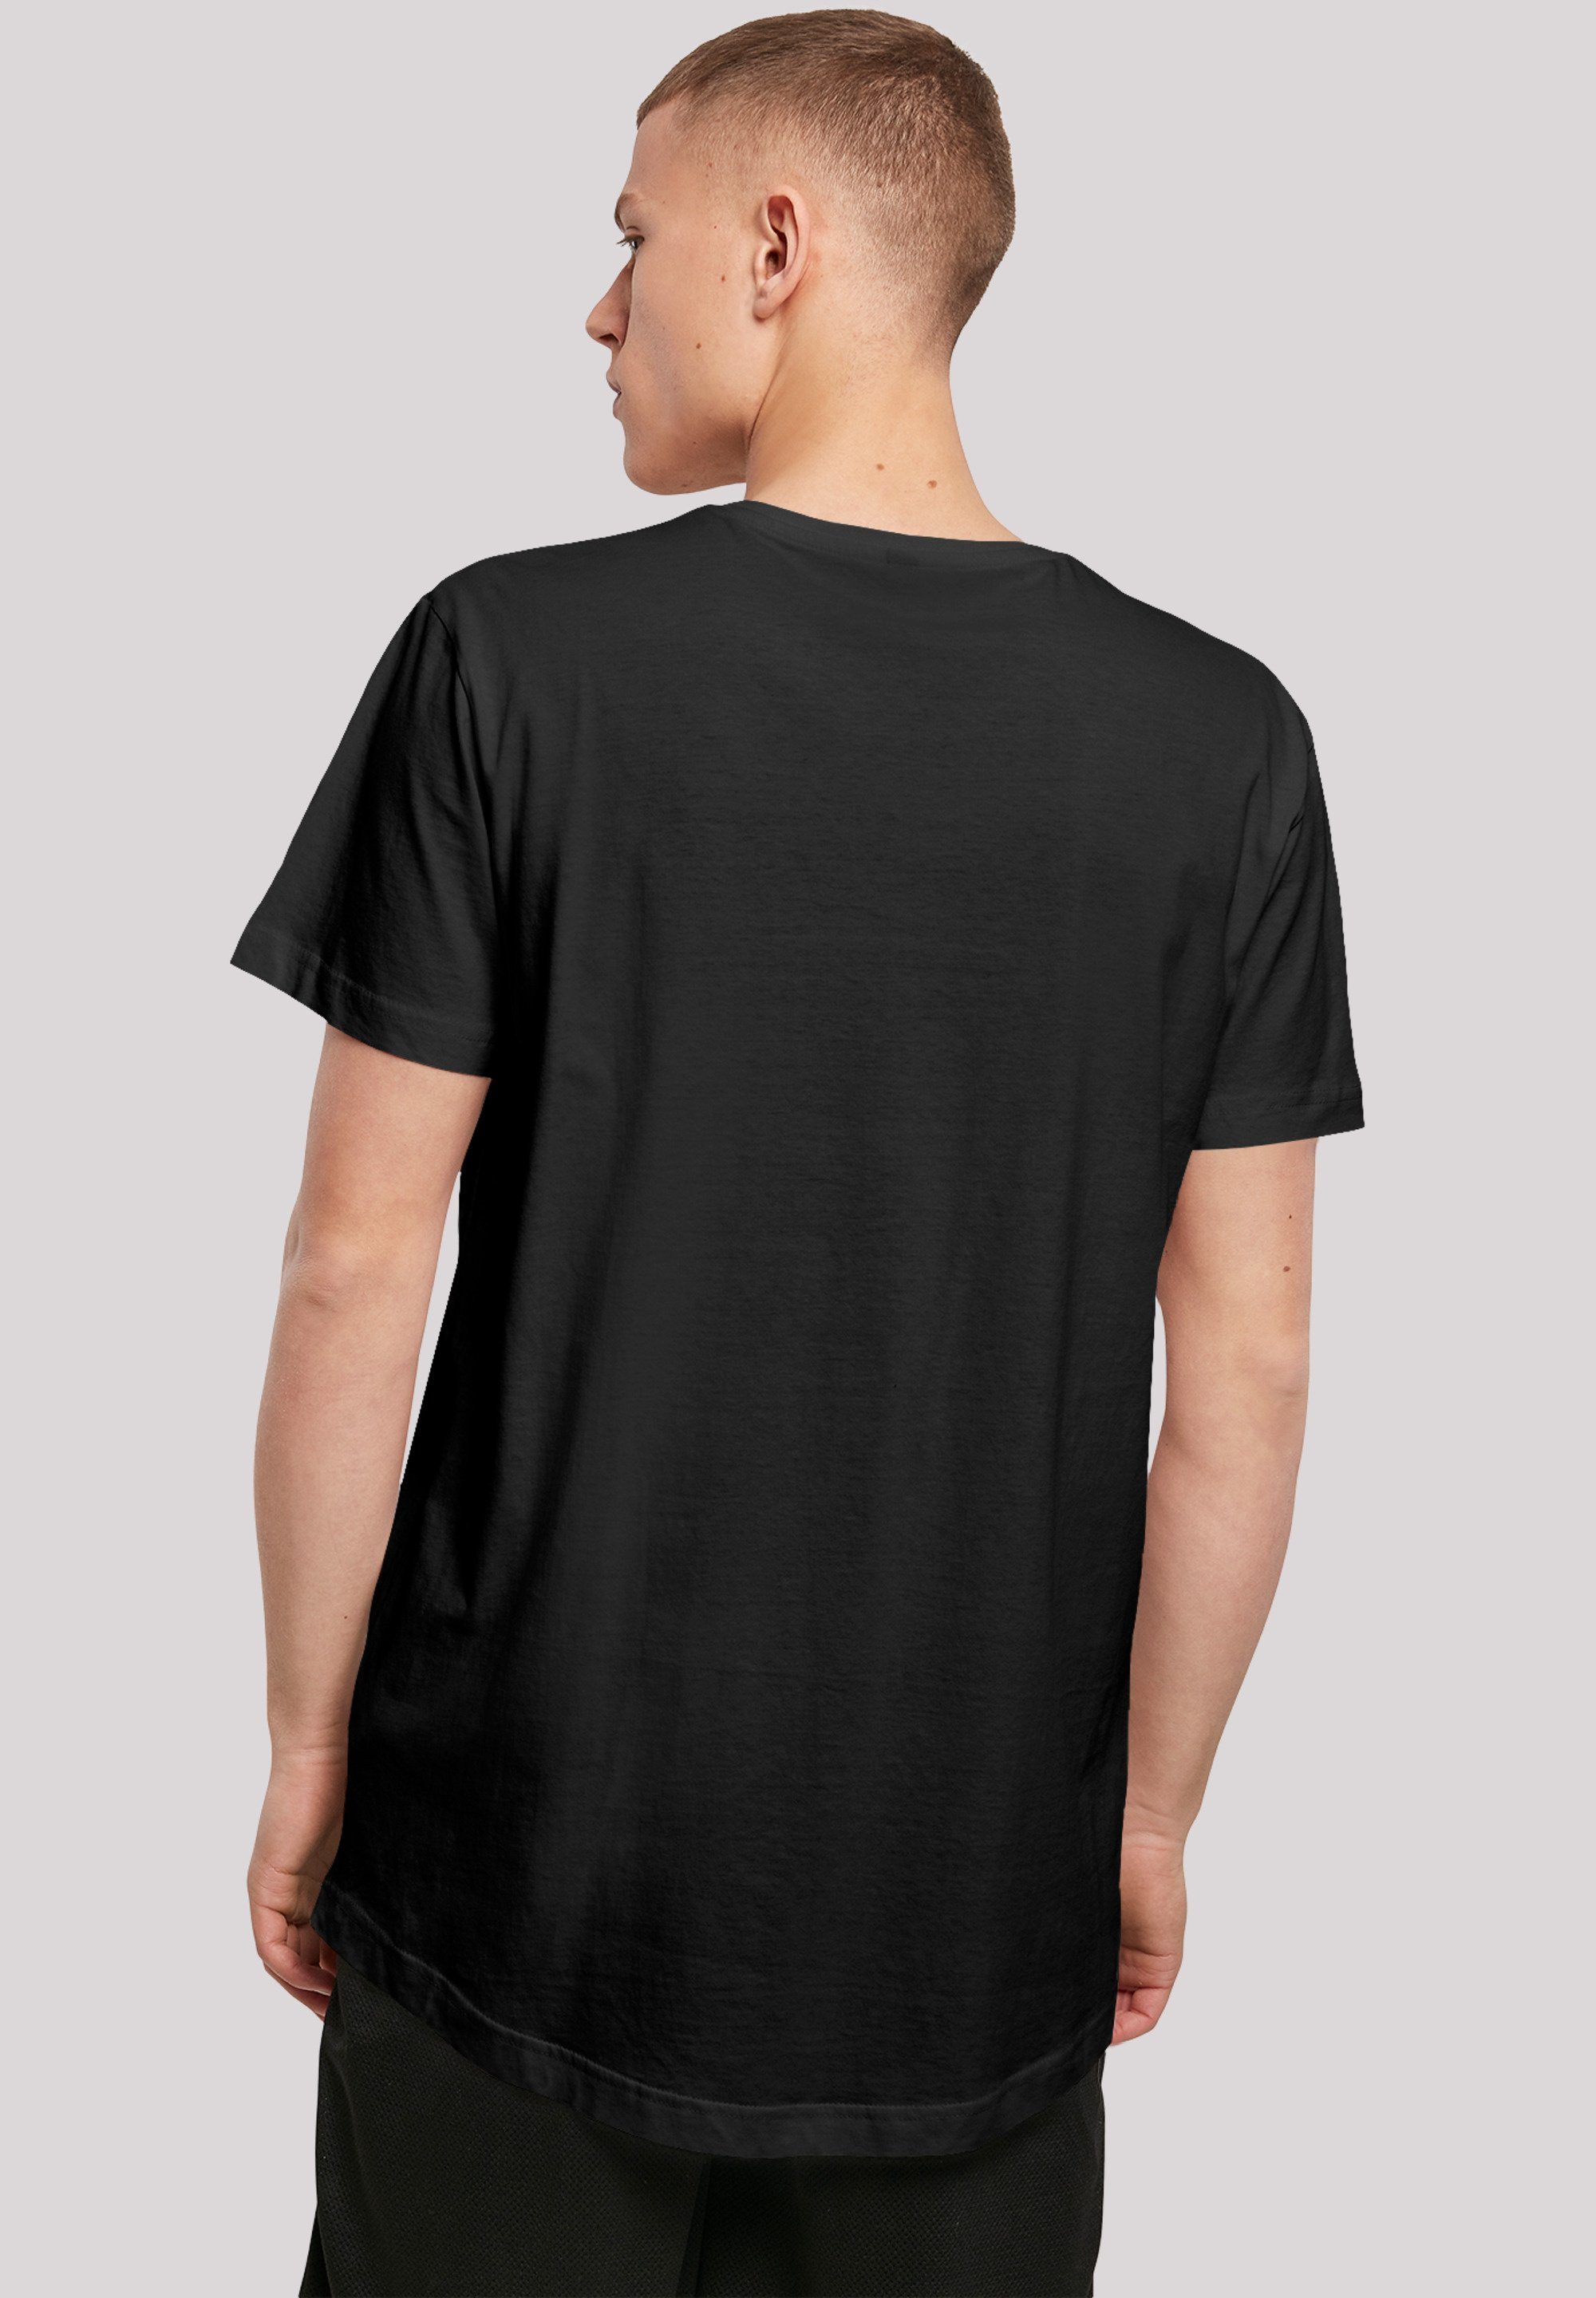 F4NT4STIC T-Shirt F4NT4STIC Long Herren,Premium Cut Merch,Lang,Longshirt,Bedruckt T-Shirt